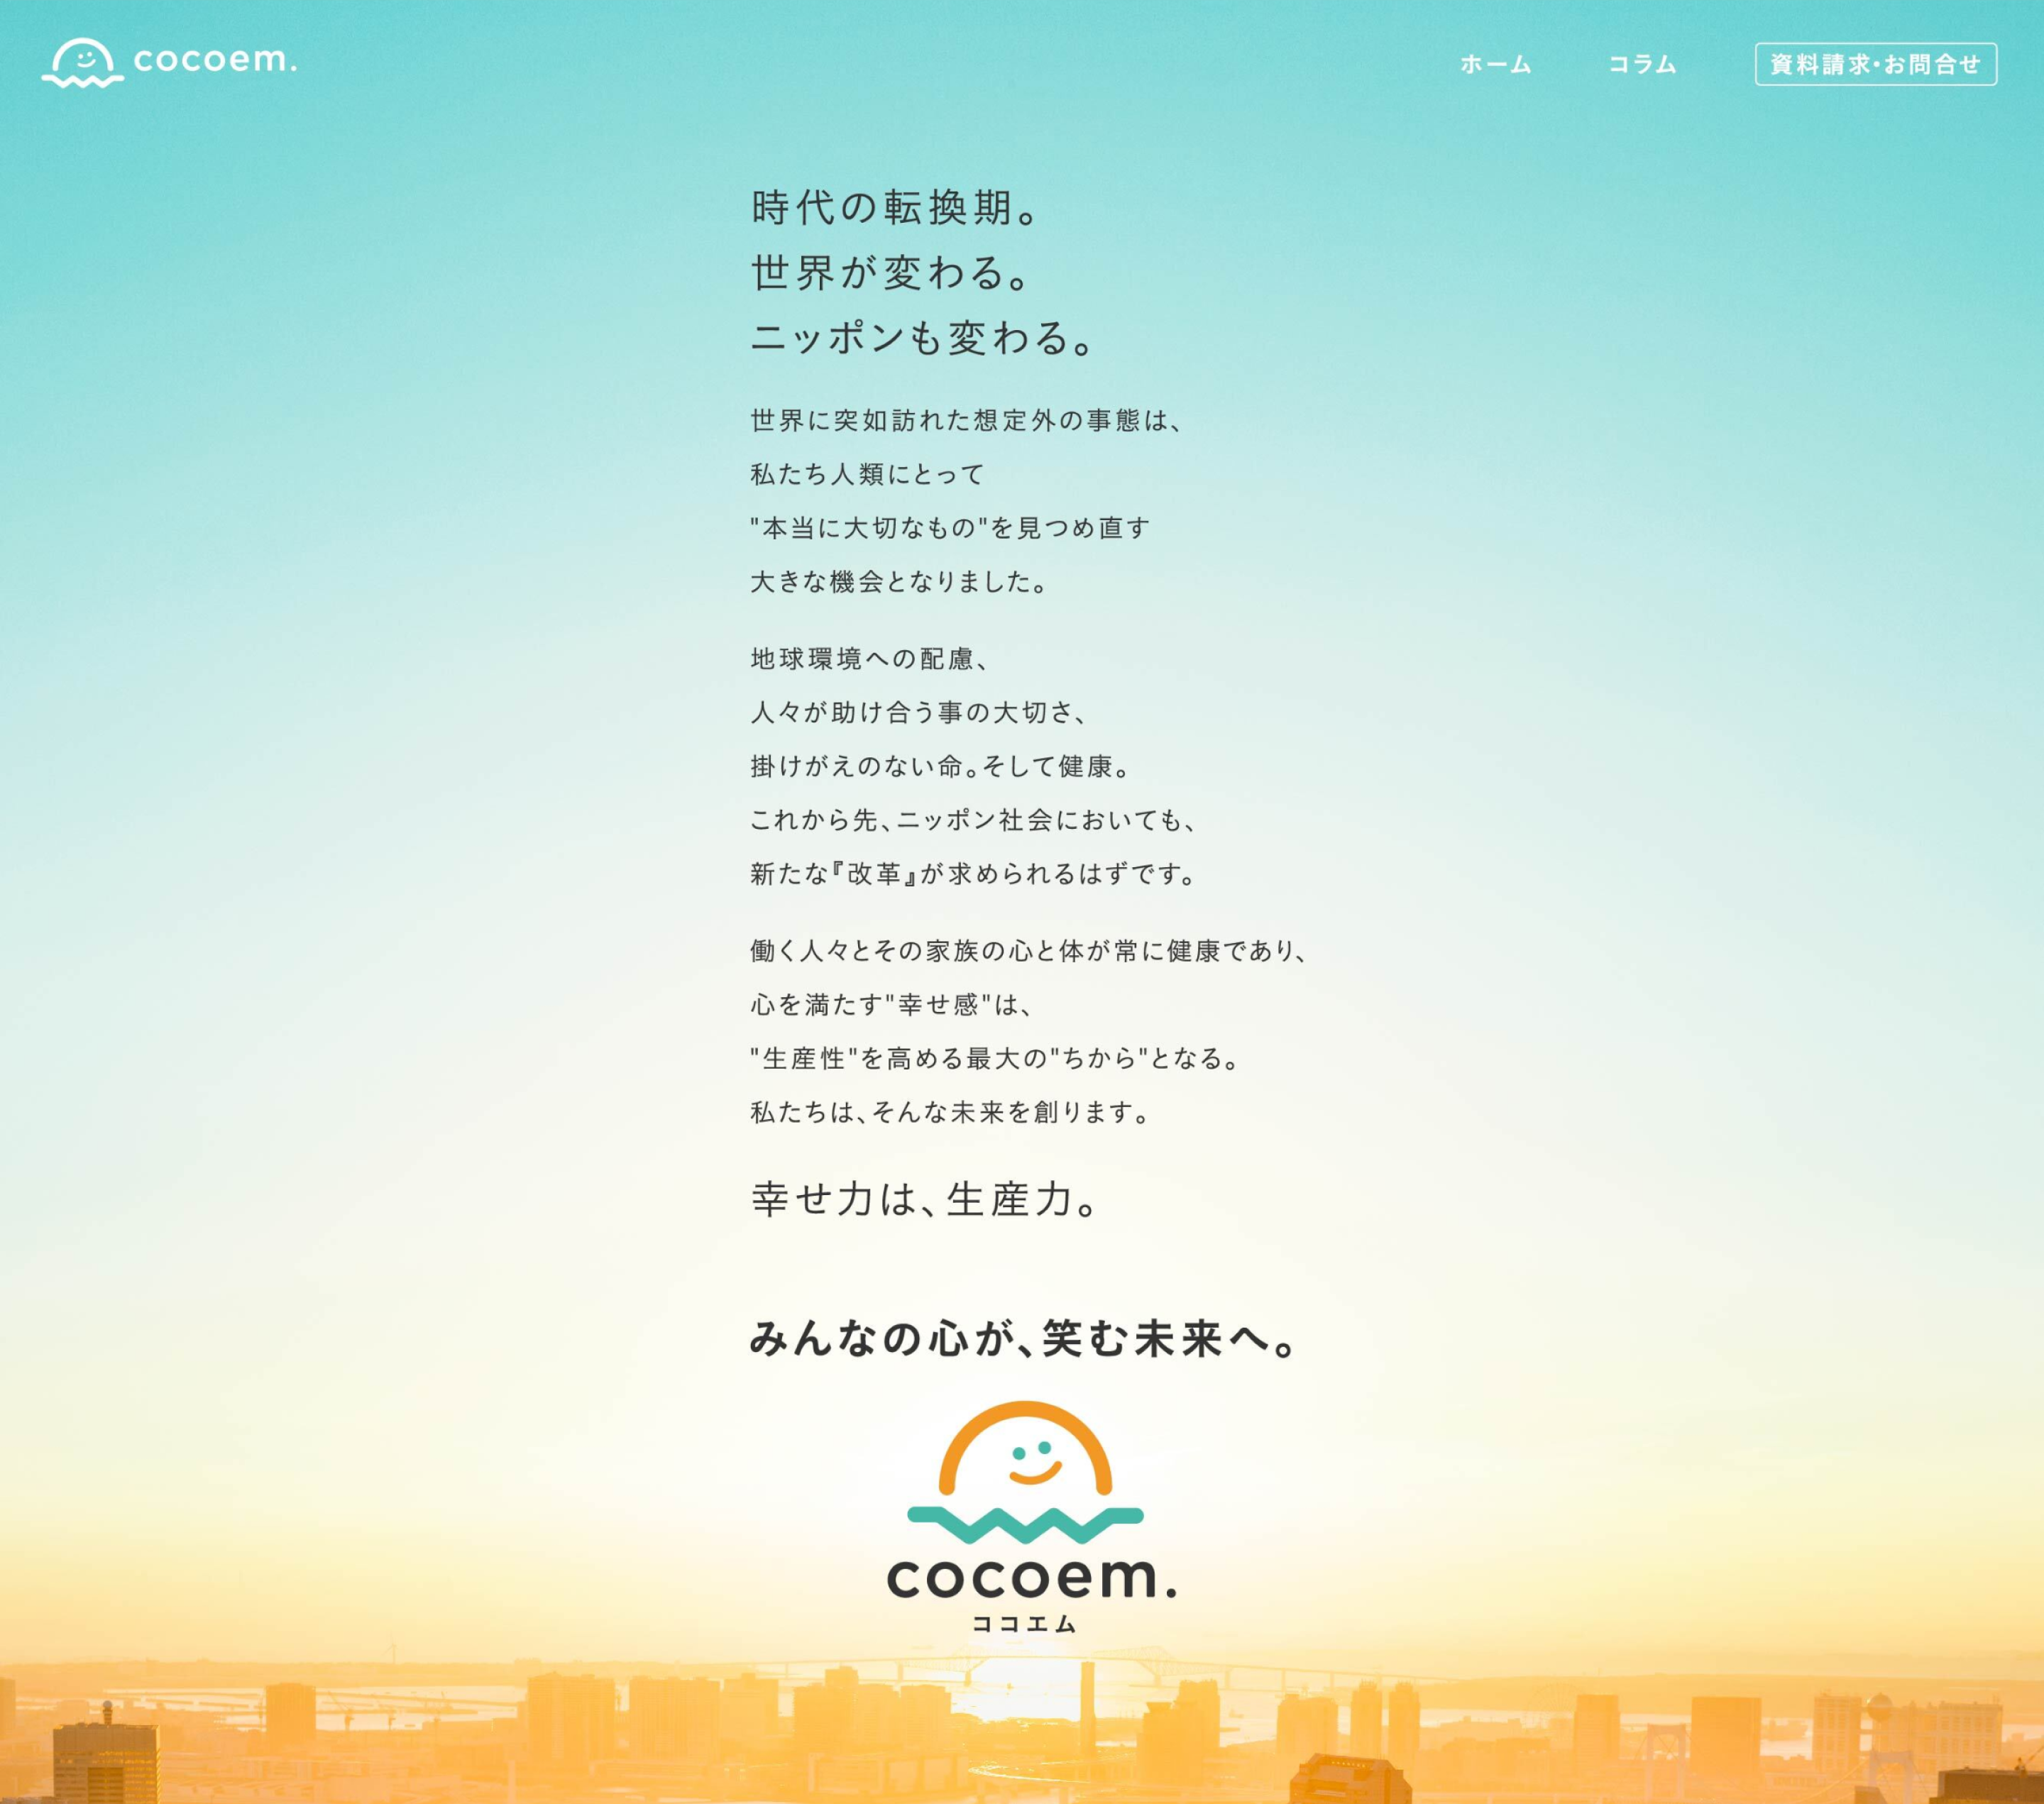 cocoem. Product Brandingのサンプル画像です